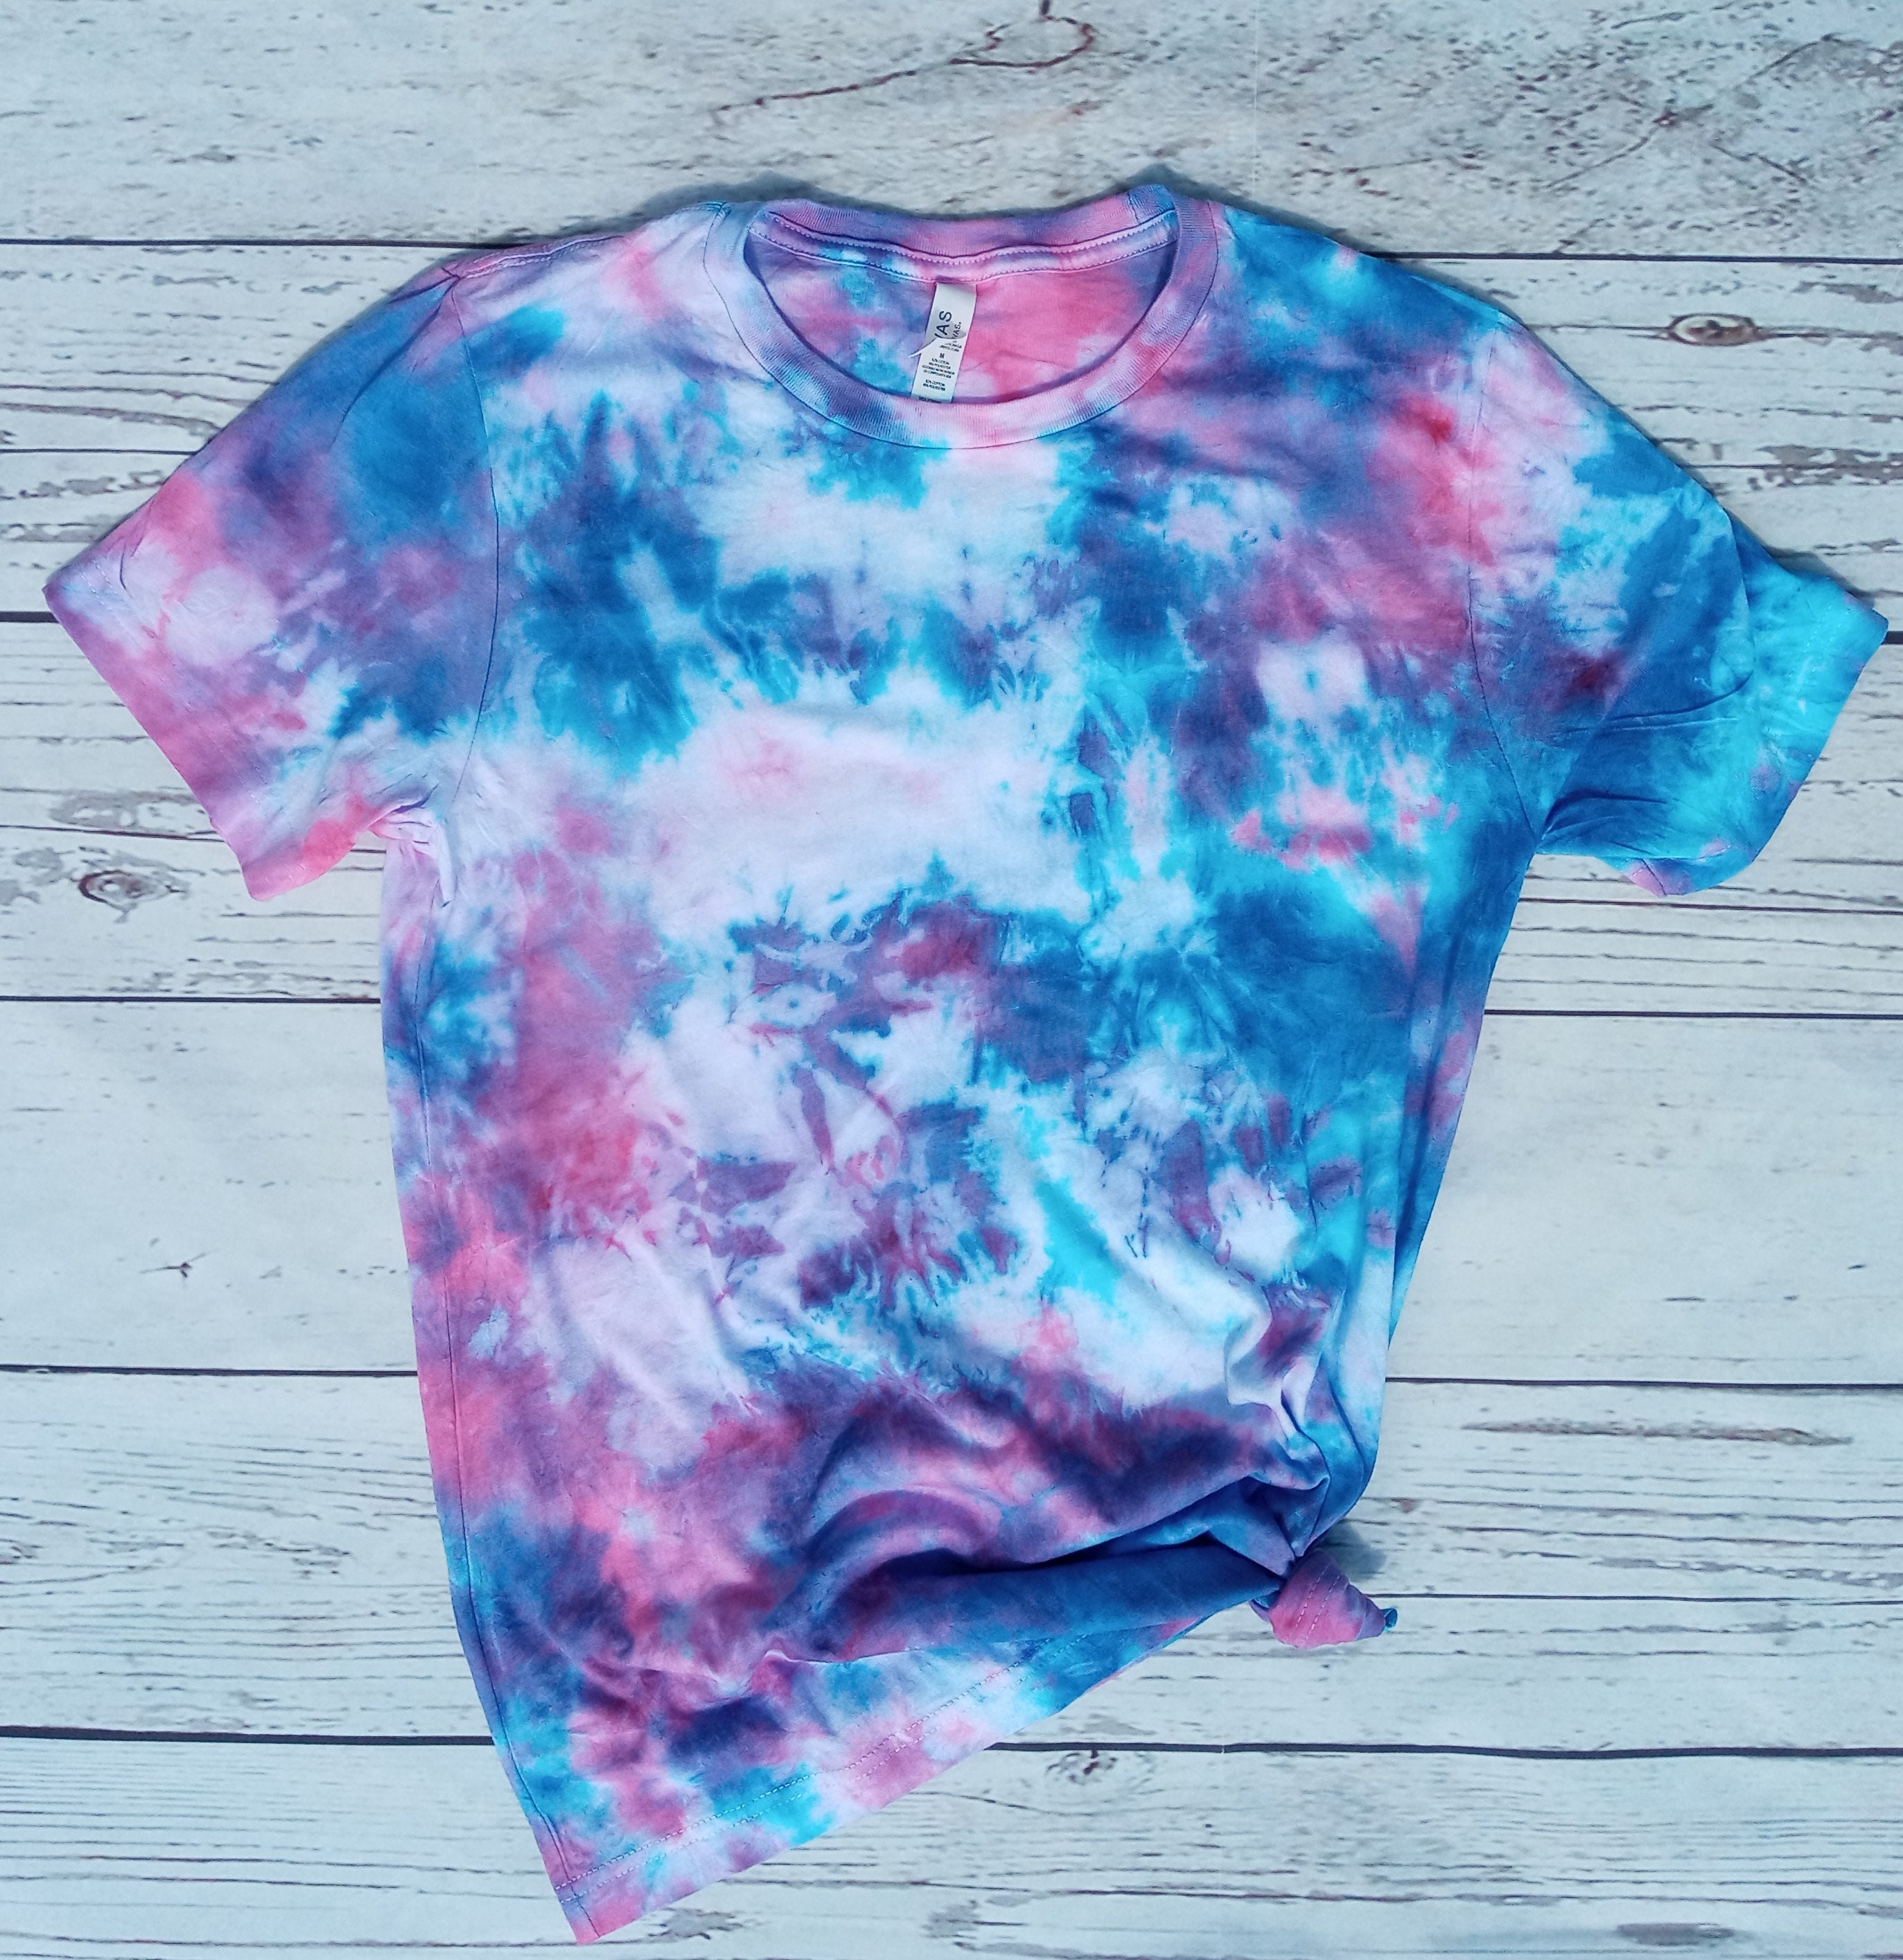 Tye-Dye Bare All T-Shirt (White/Cotton Candy Tye-Dye)– Bare All